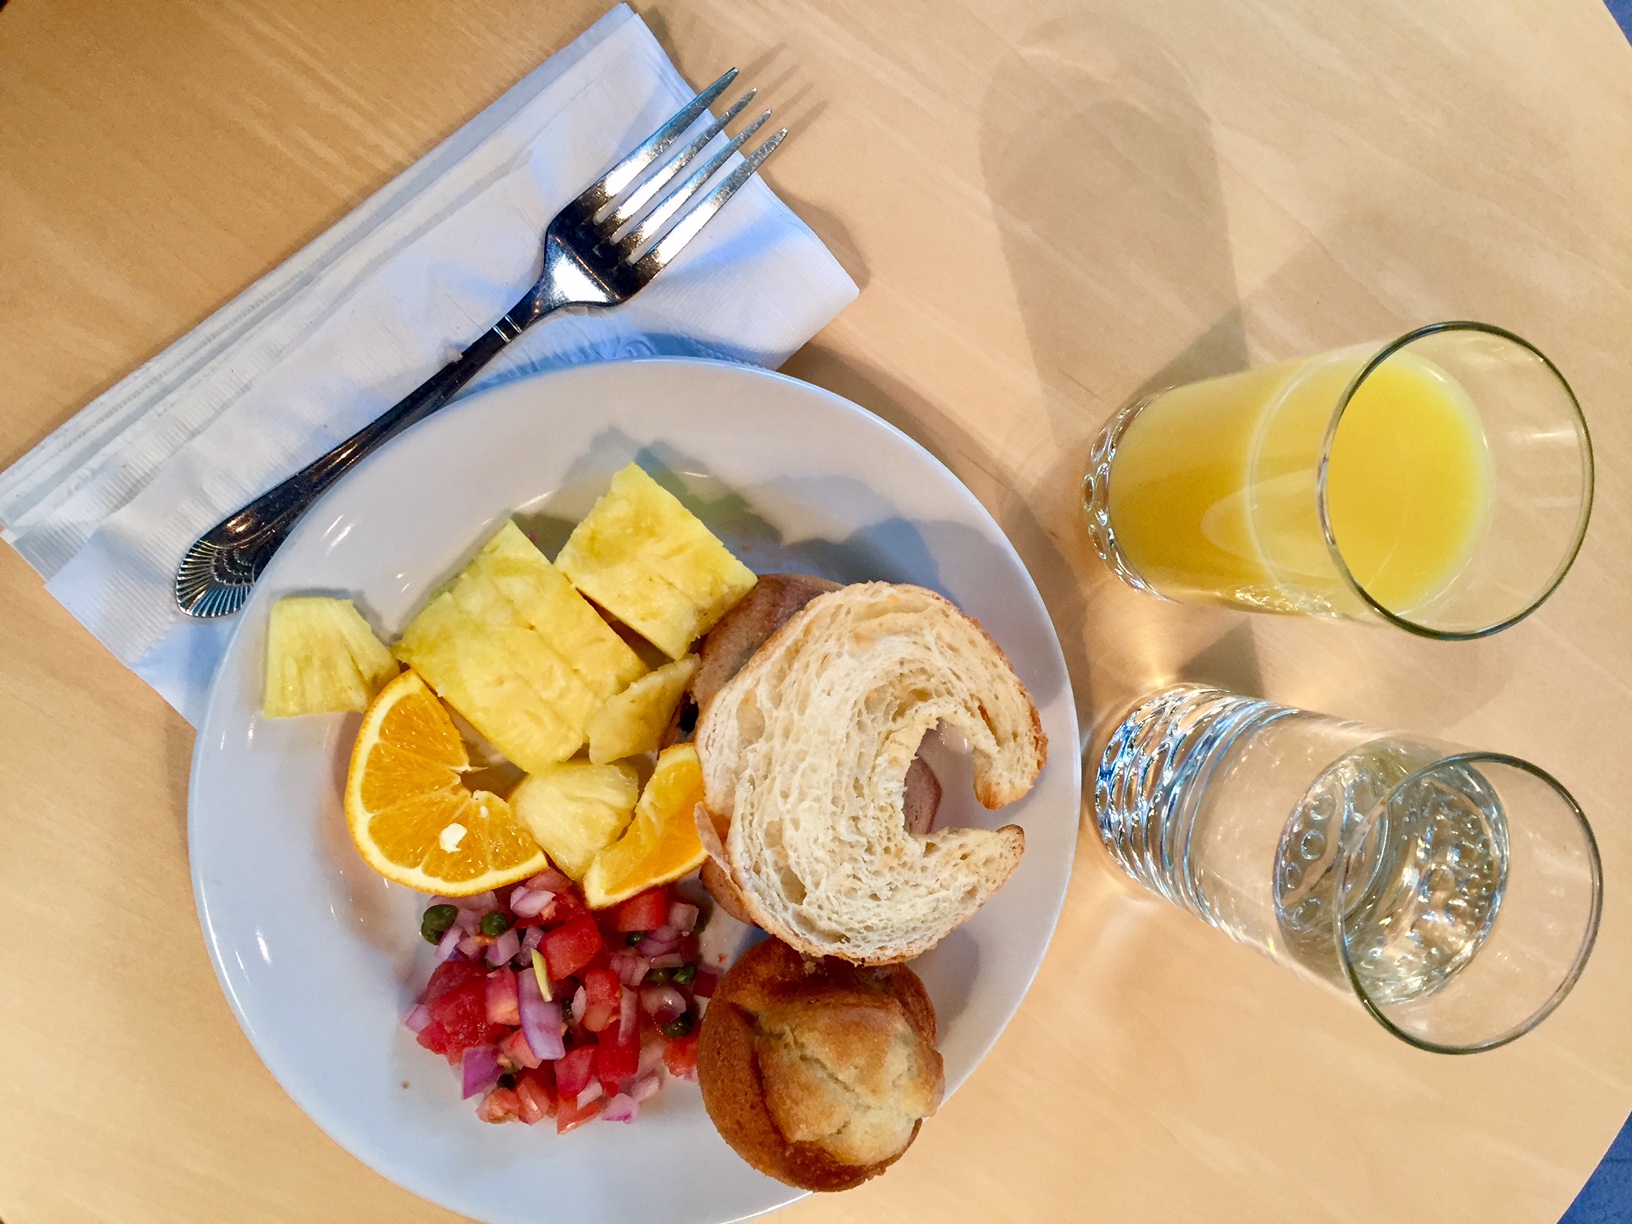 European breakfast at Hotel Sorella (Image by LoudPen)